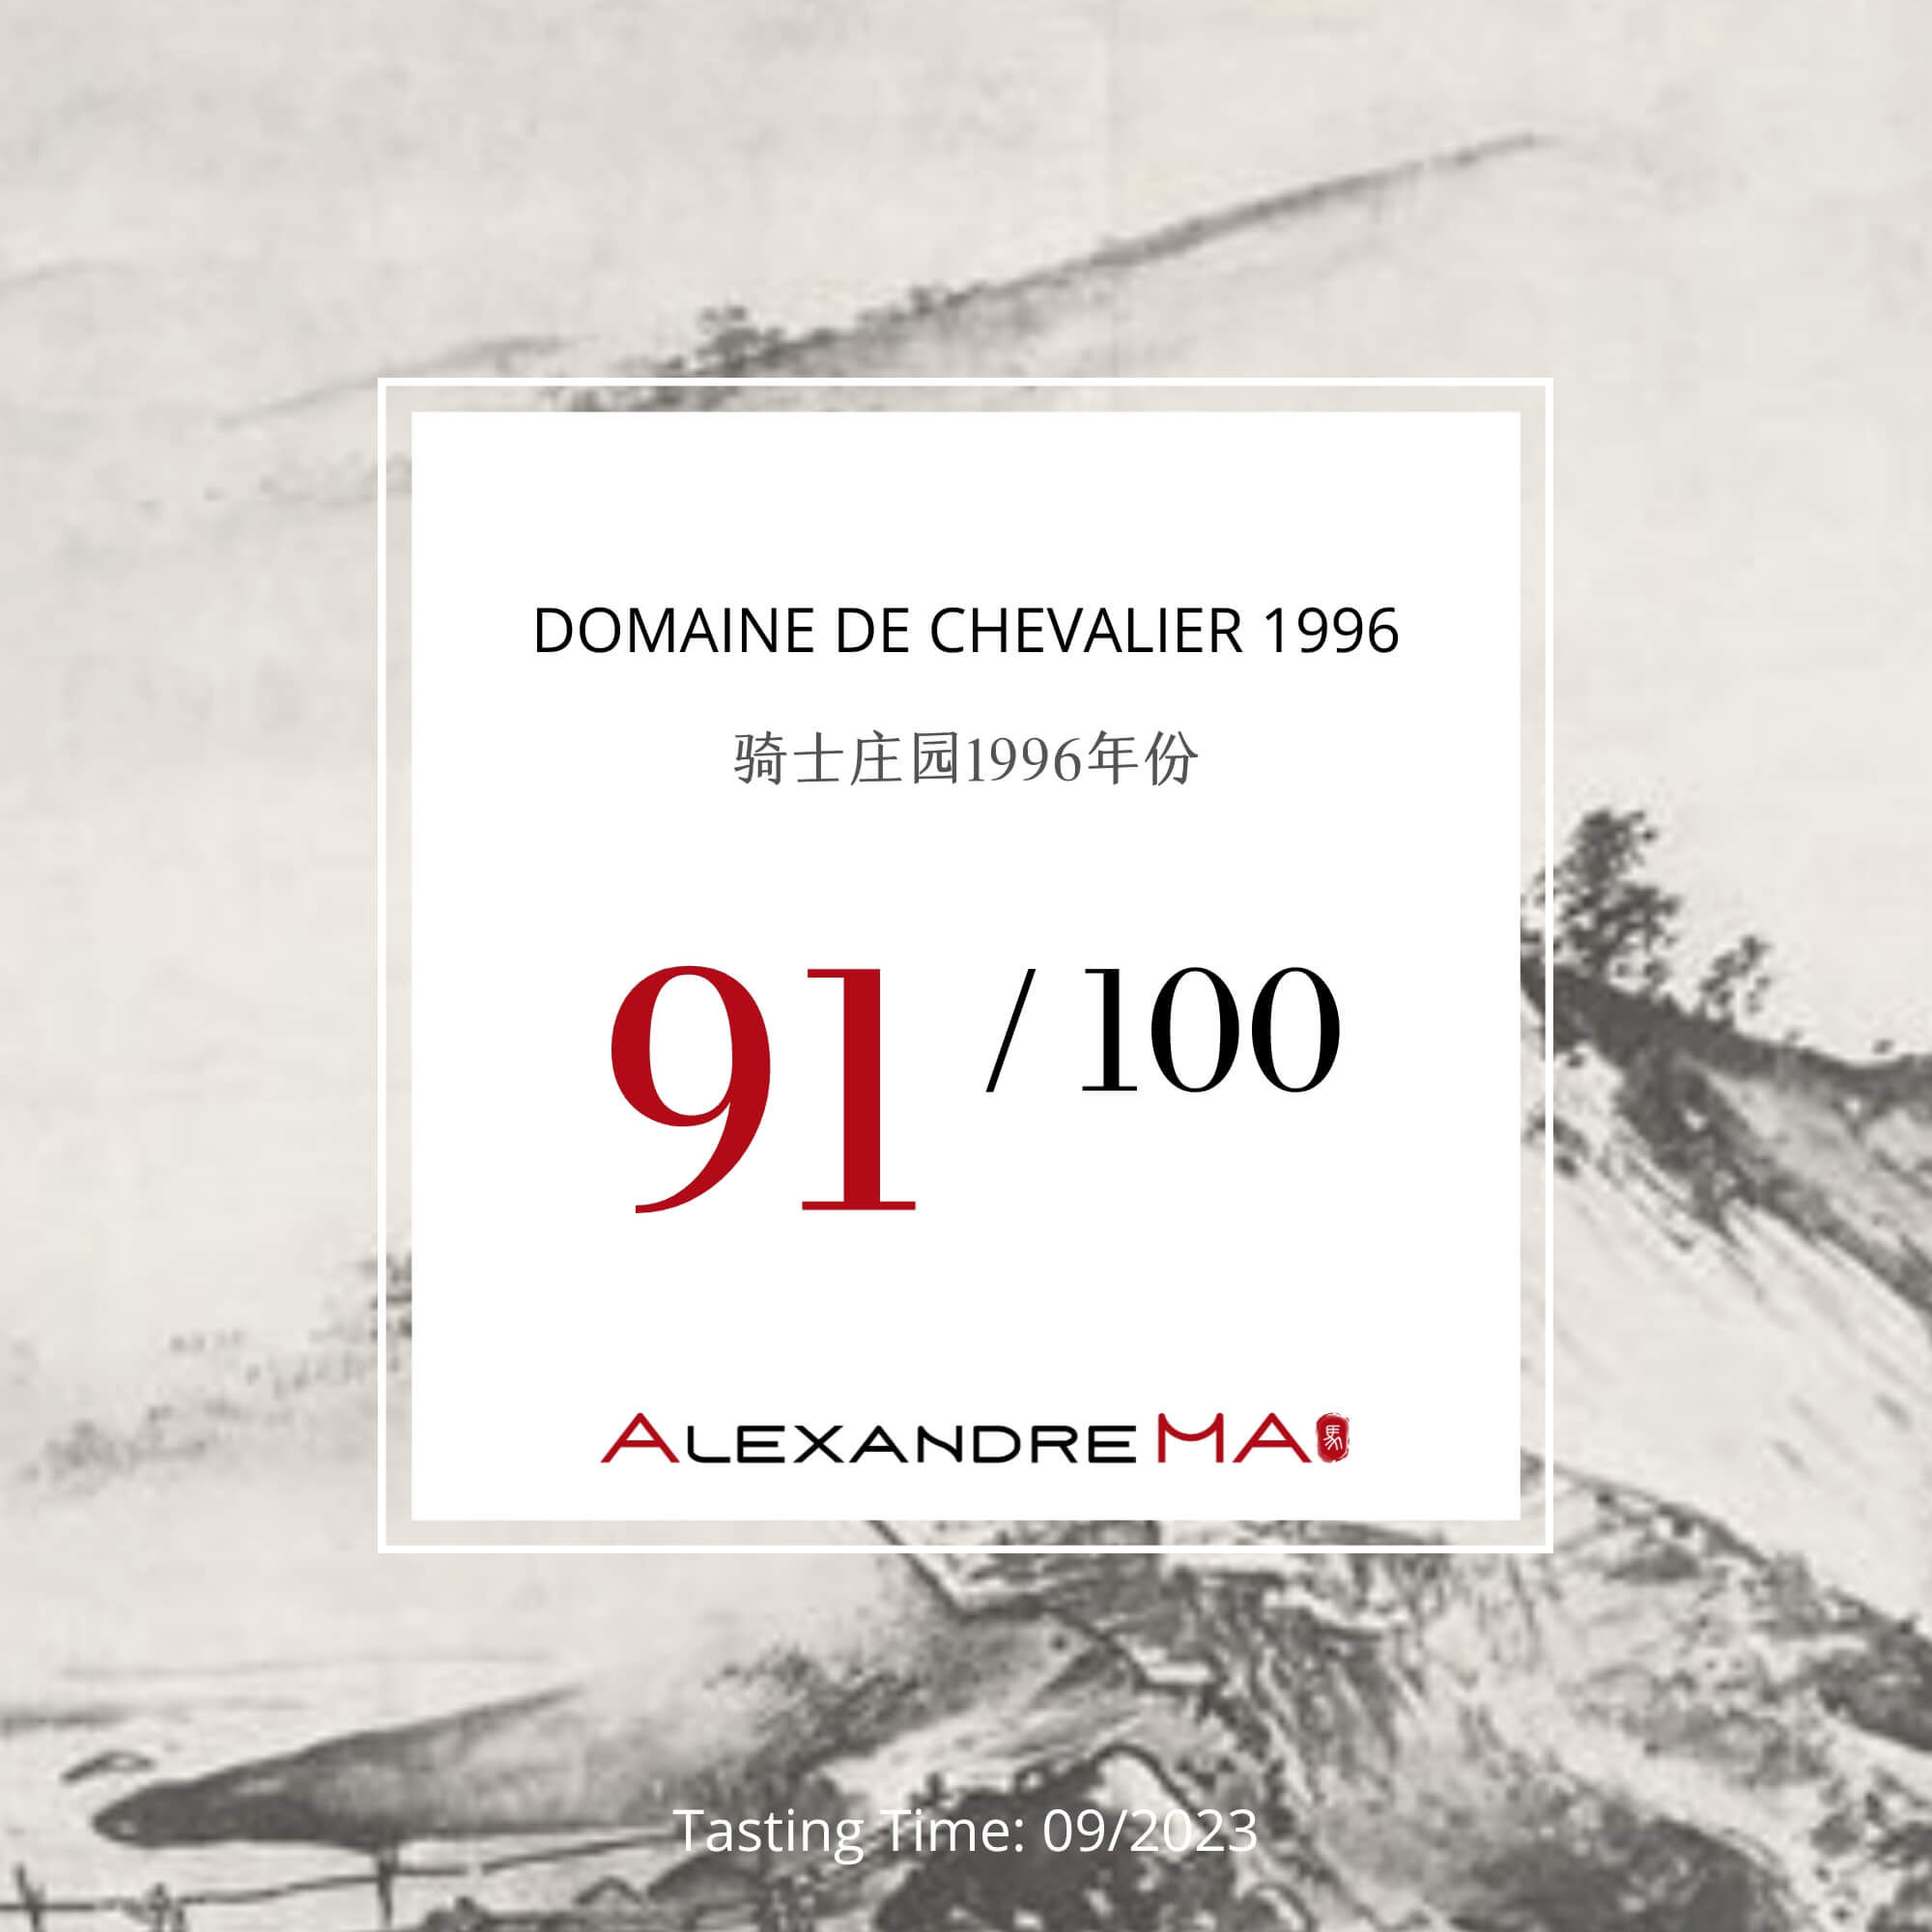 Domaine de Chevalier 1996 - Alexandre MA